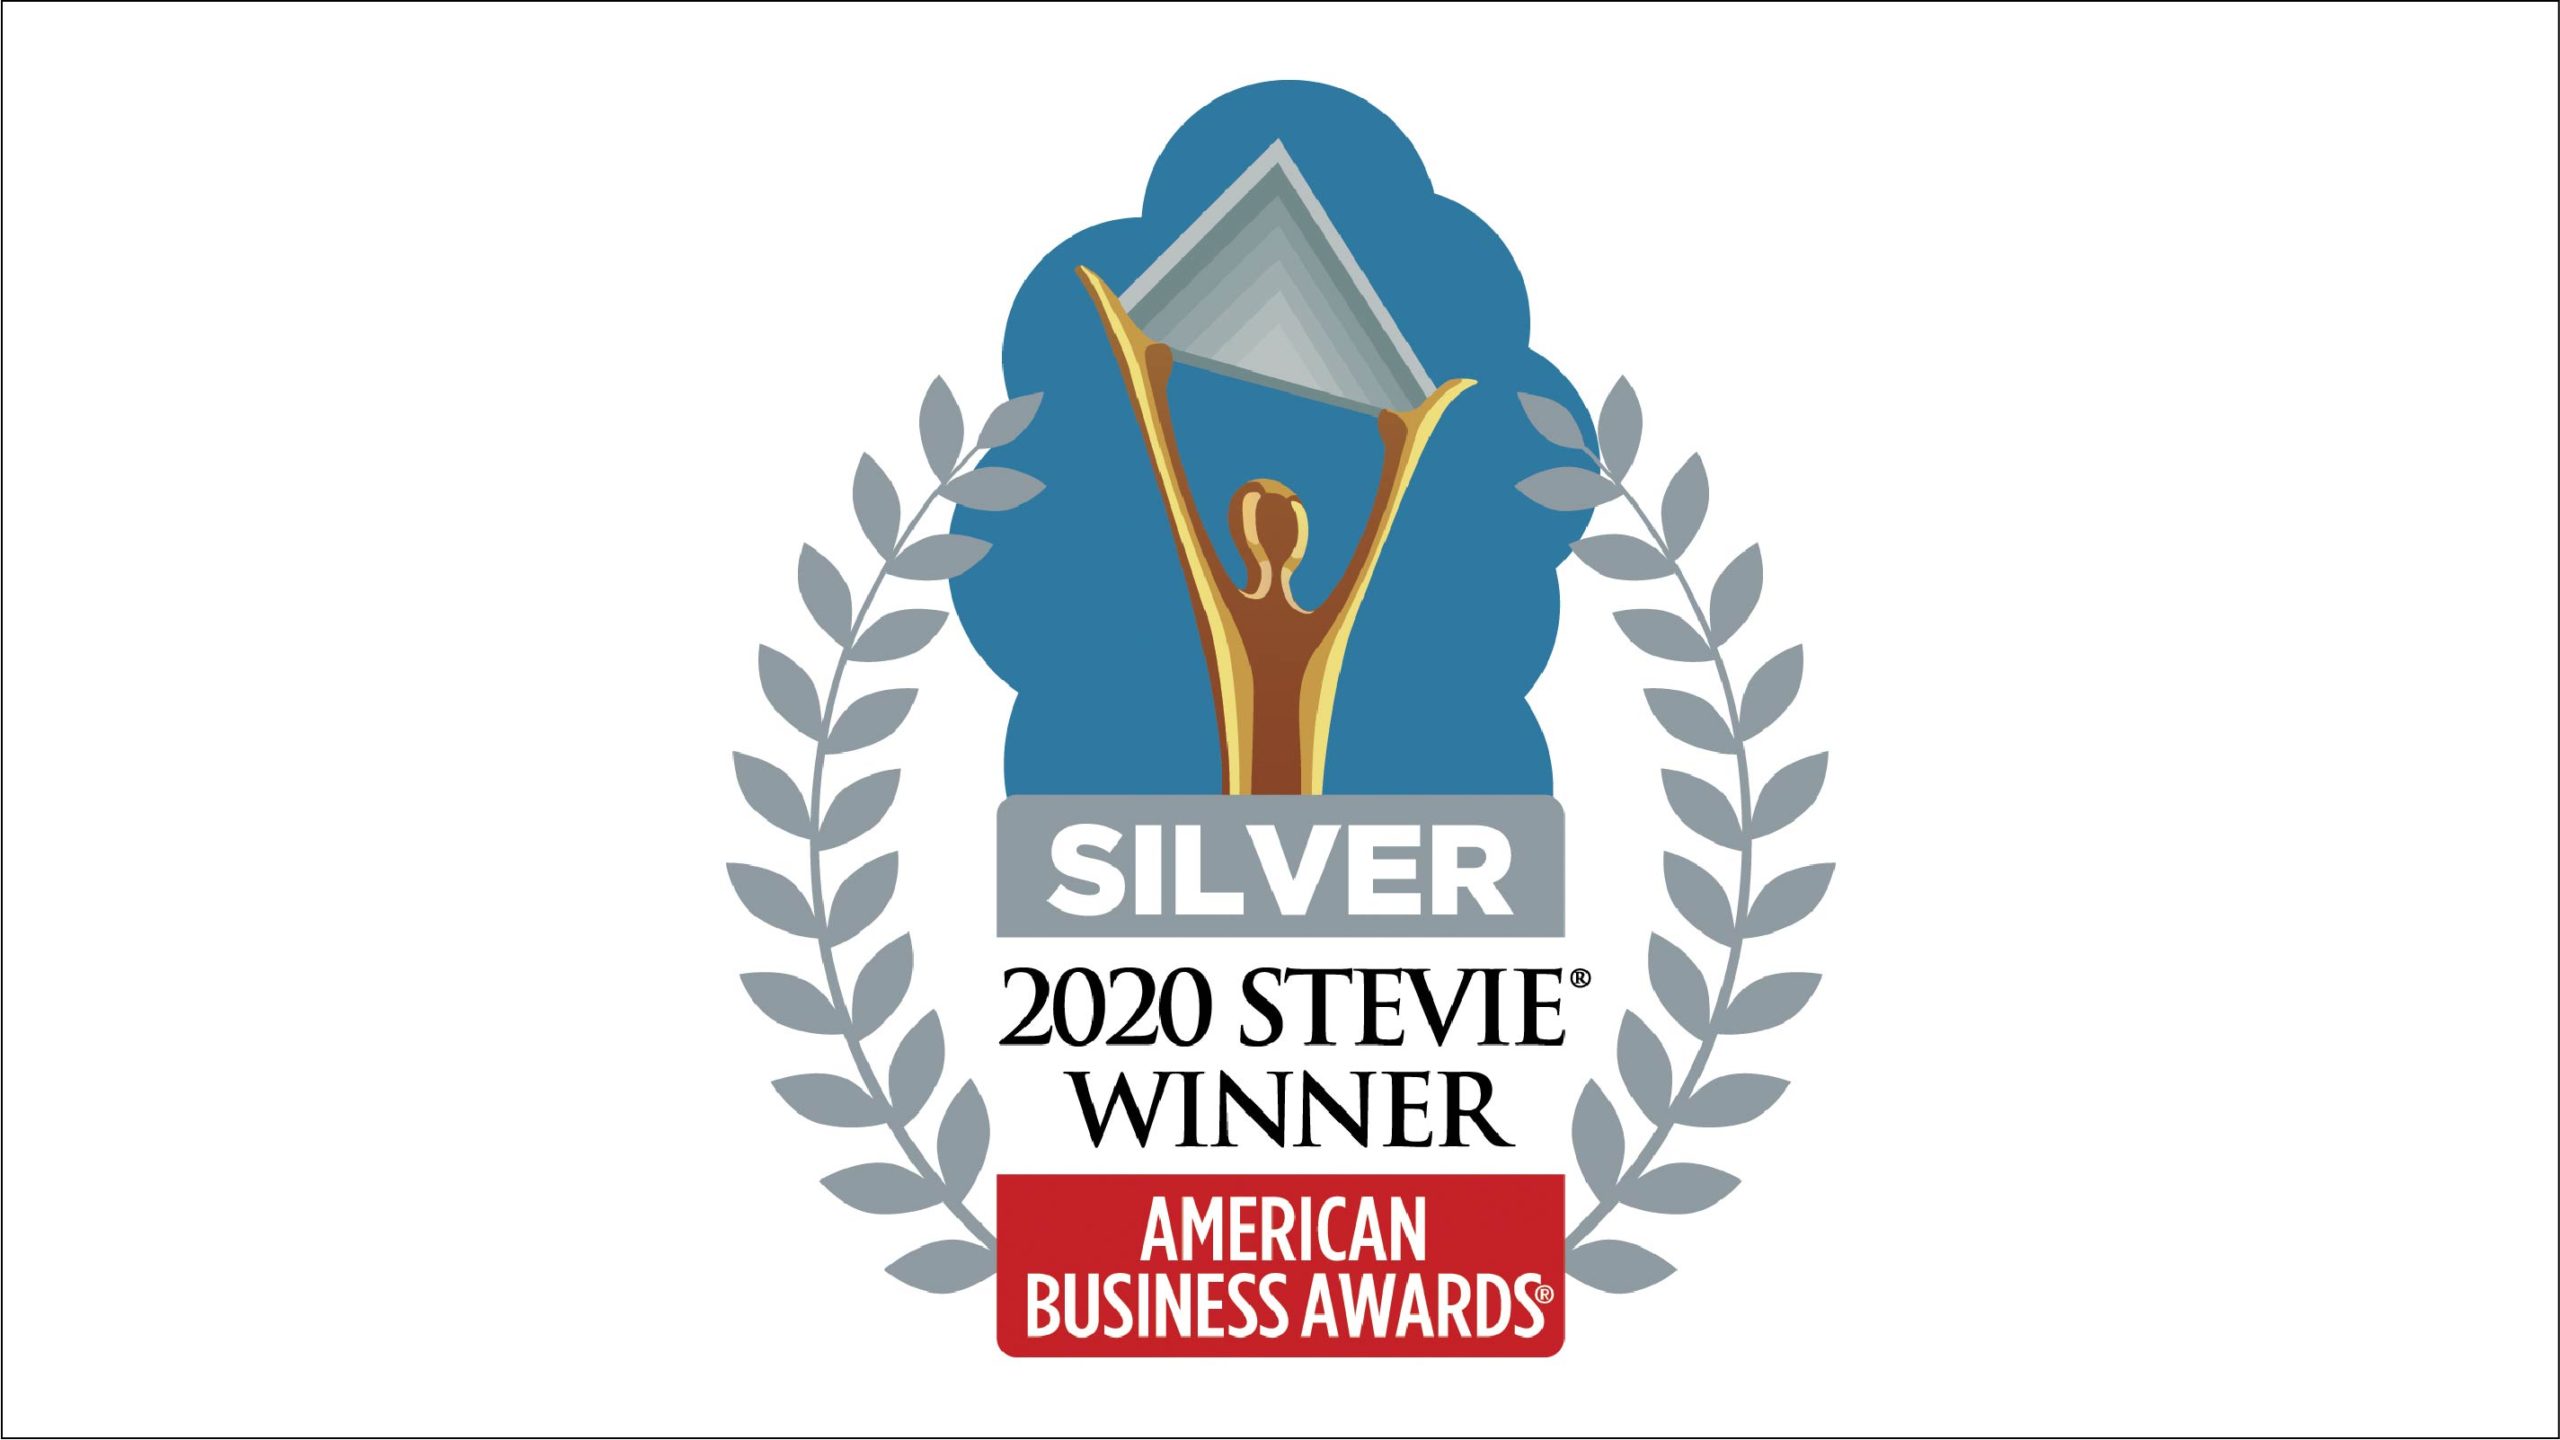 2020 Stevie Winner Award